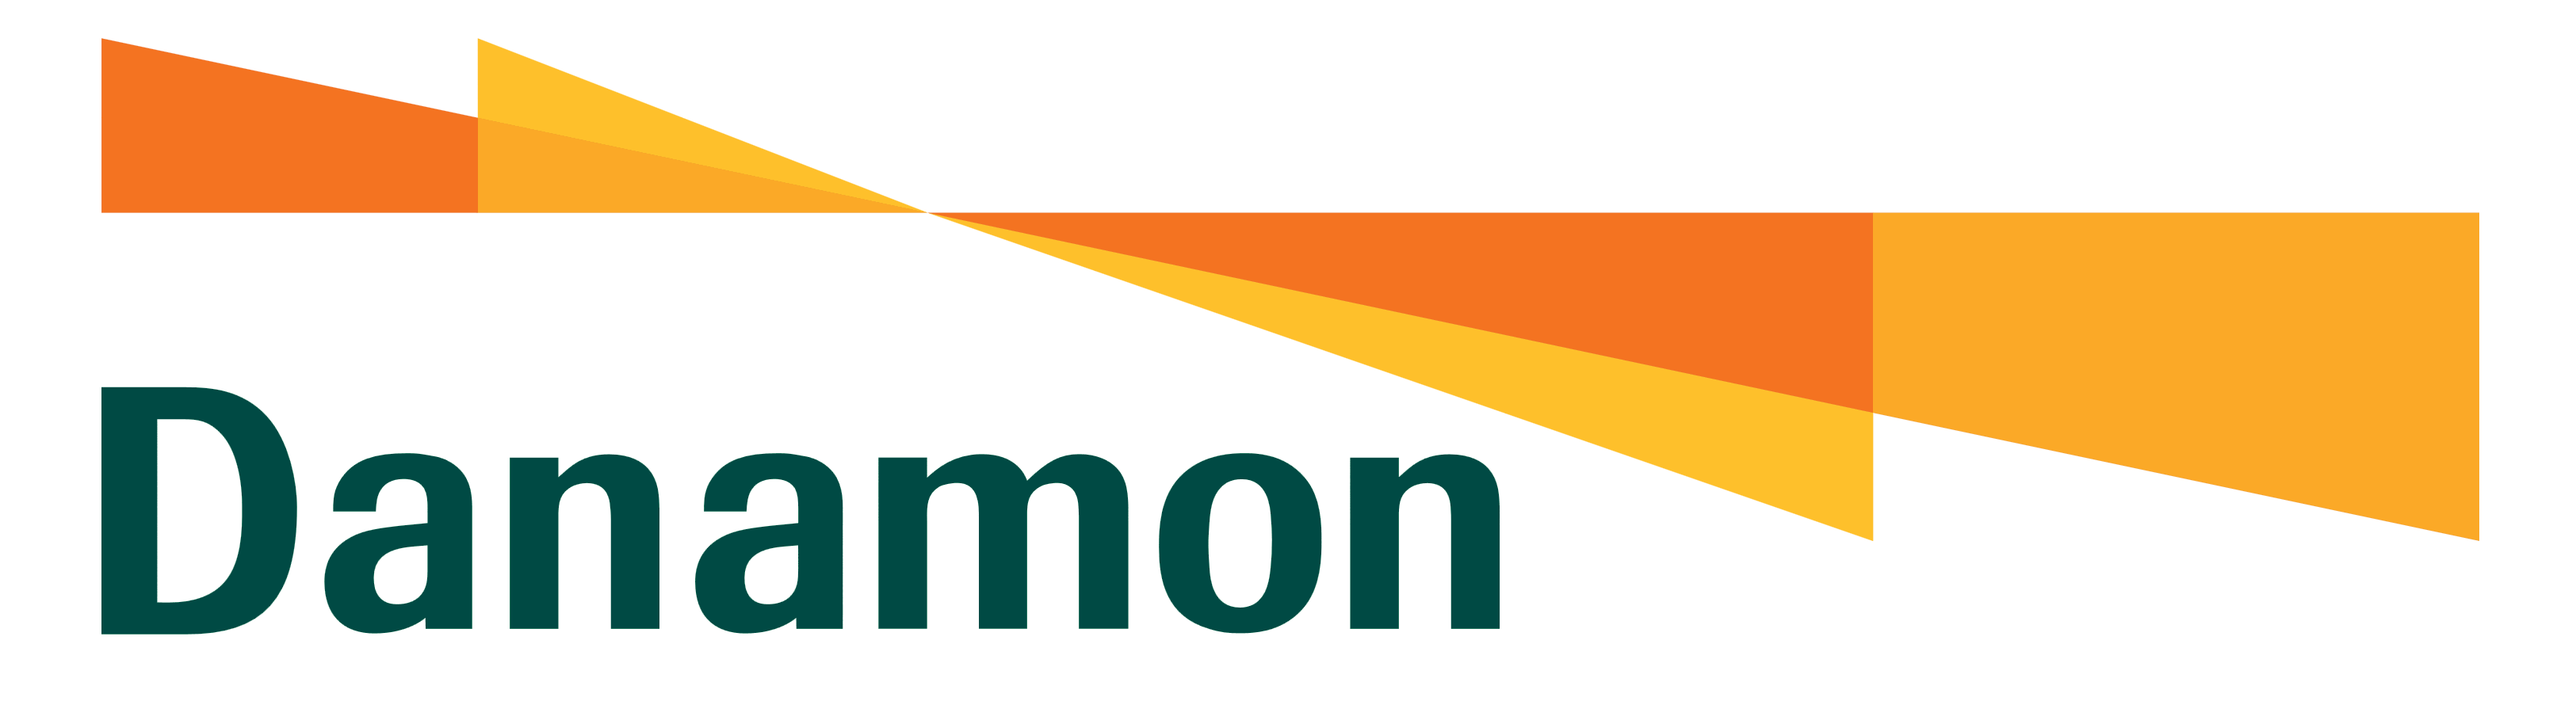 Danamon Bank logo, logotype